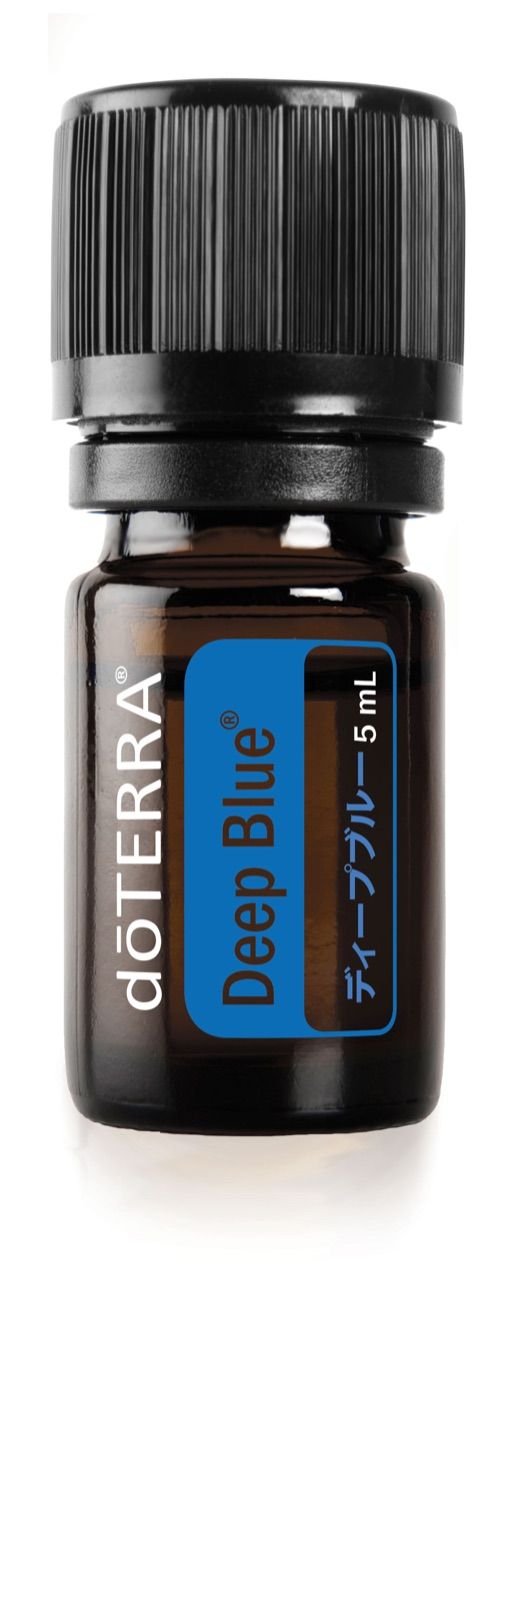 ドテラ ディープブルー 5ml - エッセンシャルオイル